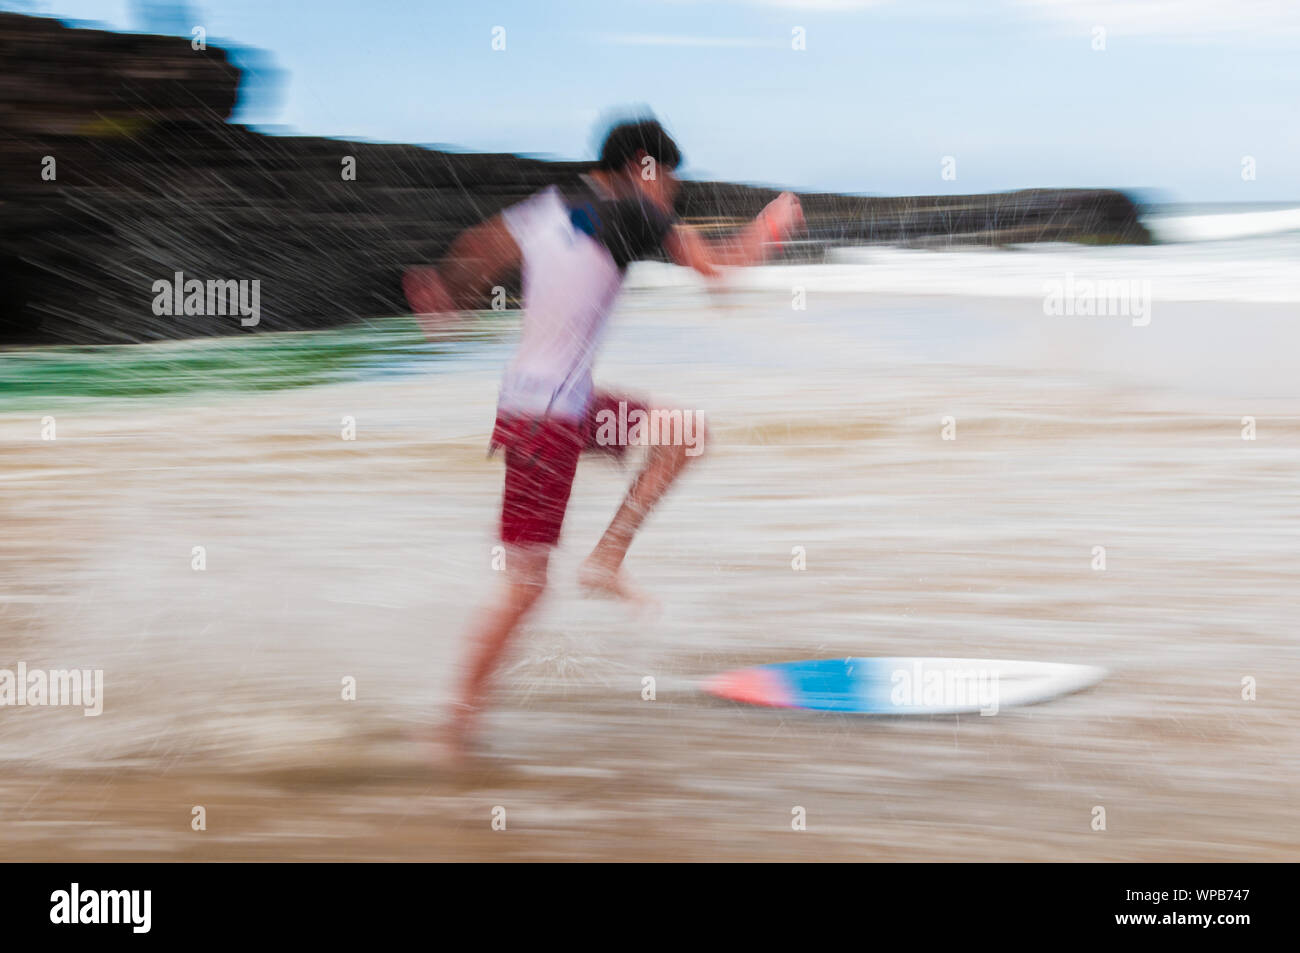 Junger Mann laufen und springen auf einem skim Board im flachen Wasser am Strand auf Maui, Hawaii, USA Stockfoto